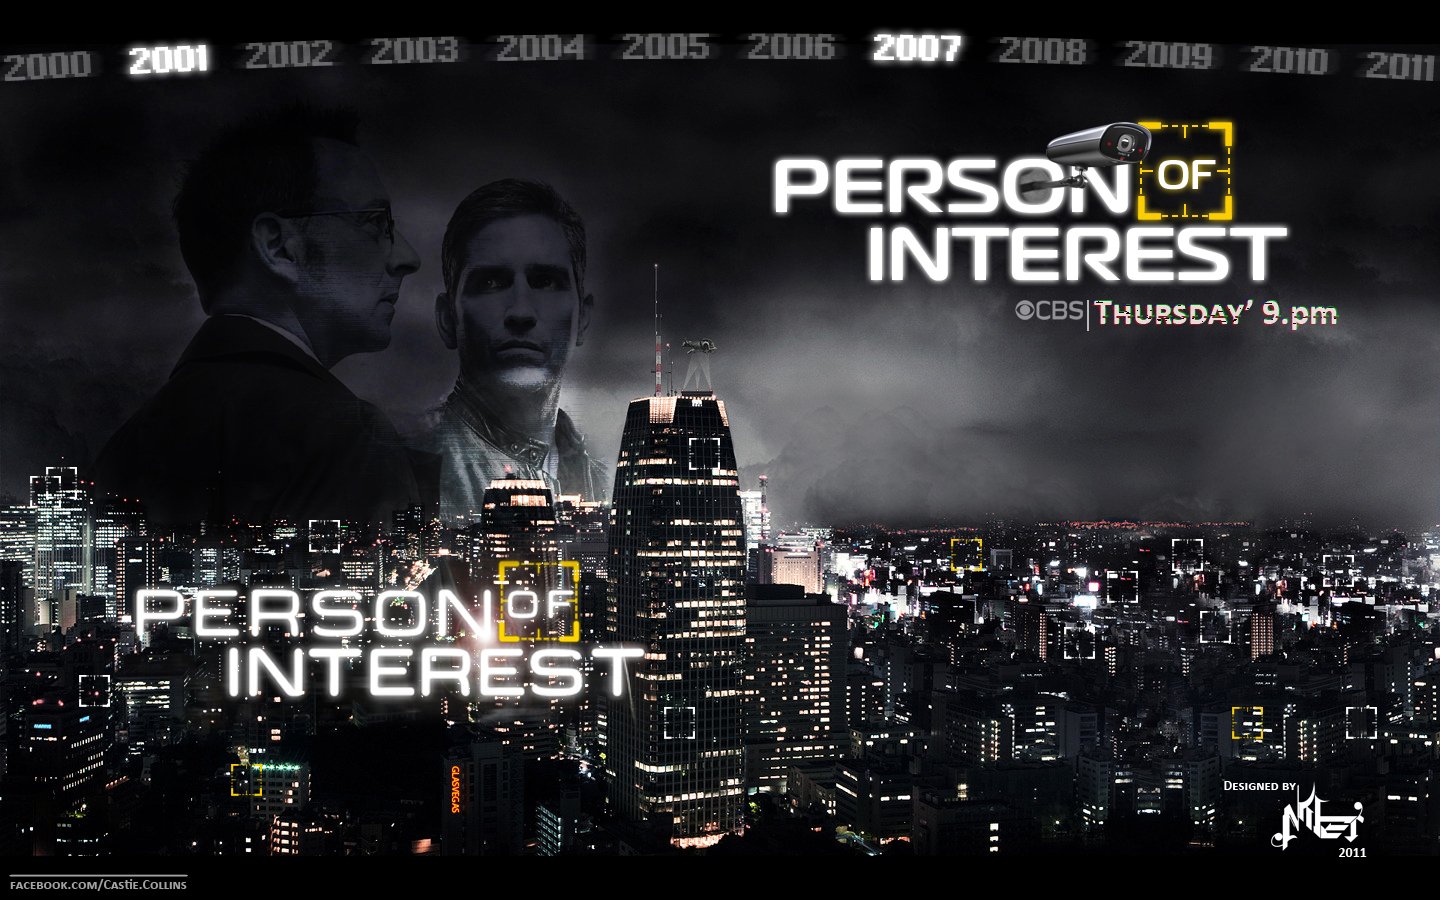 ინტერესის ობიექტი სეზონი 1 / Person of Interest Season 1 ქართულად